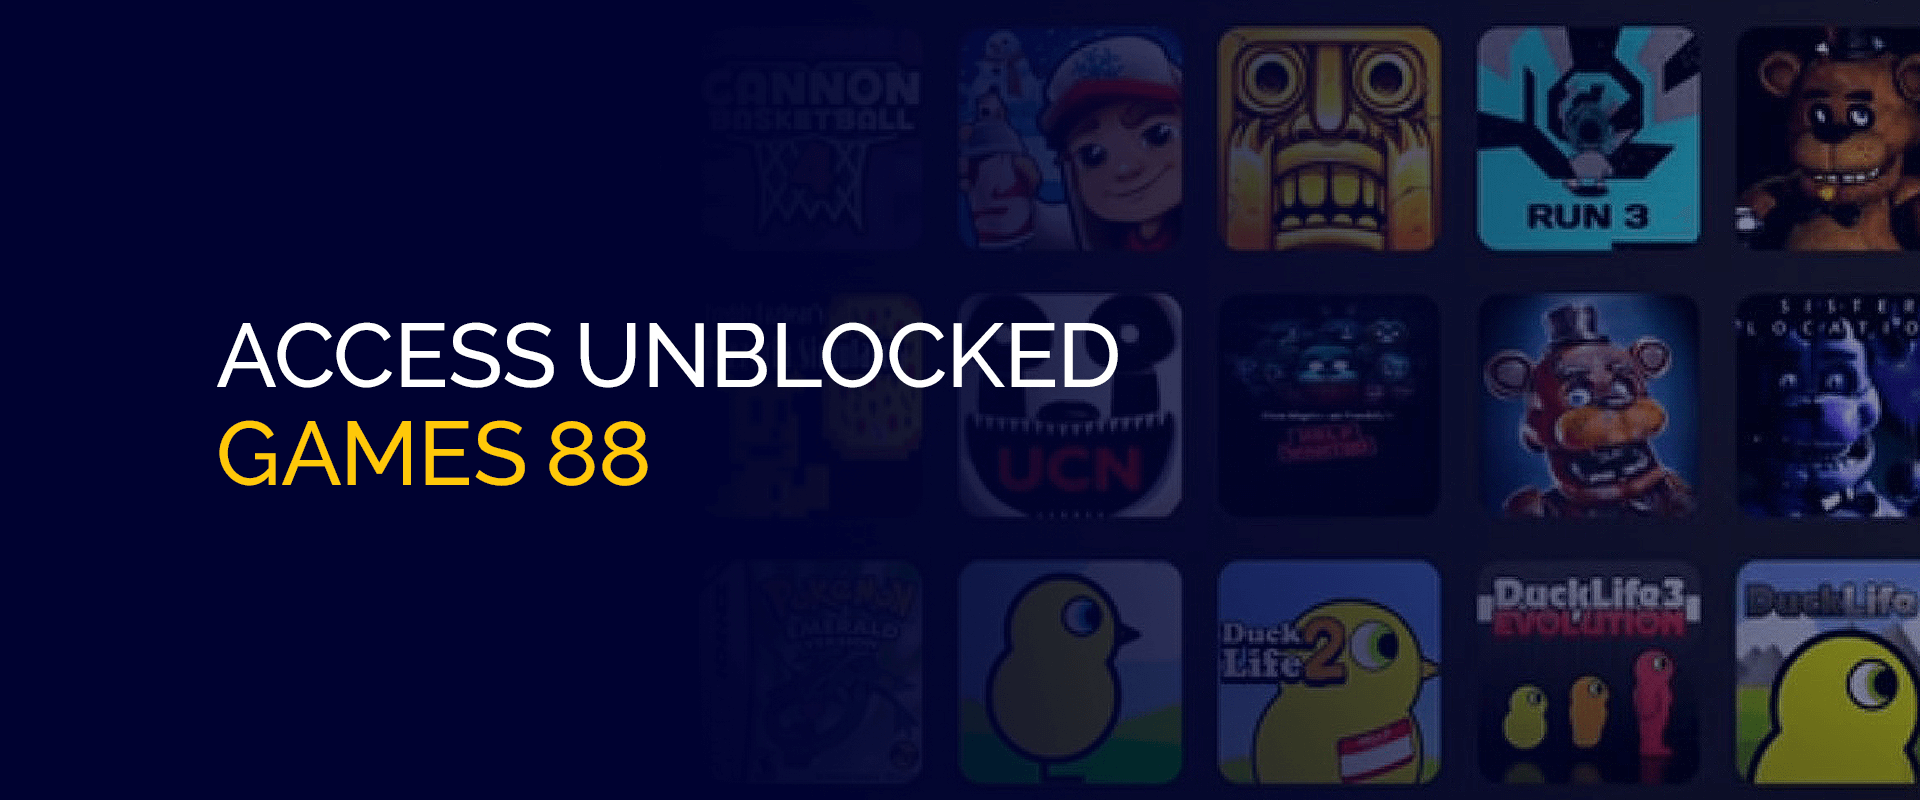 Toegang tot gedeblokkeerde games 88